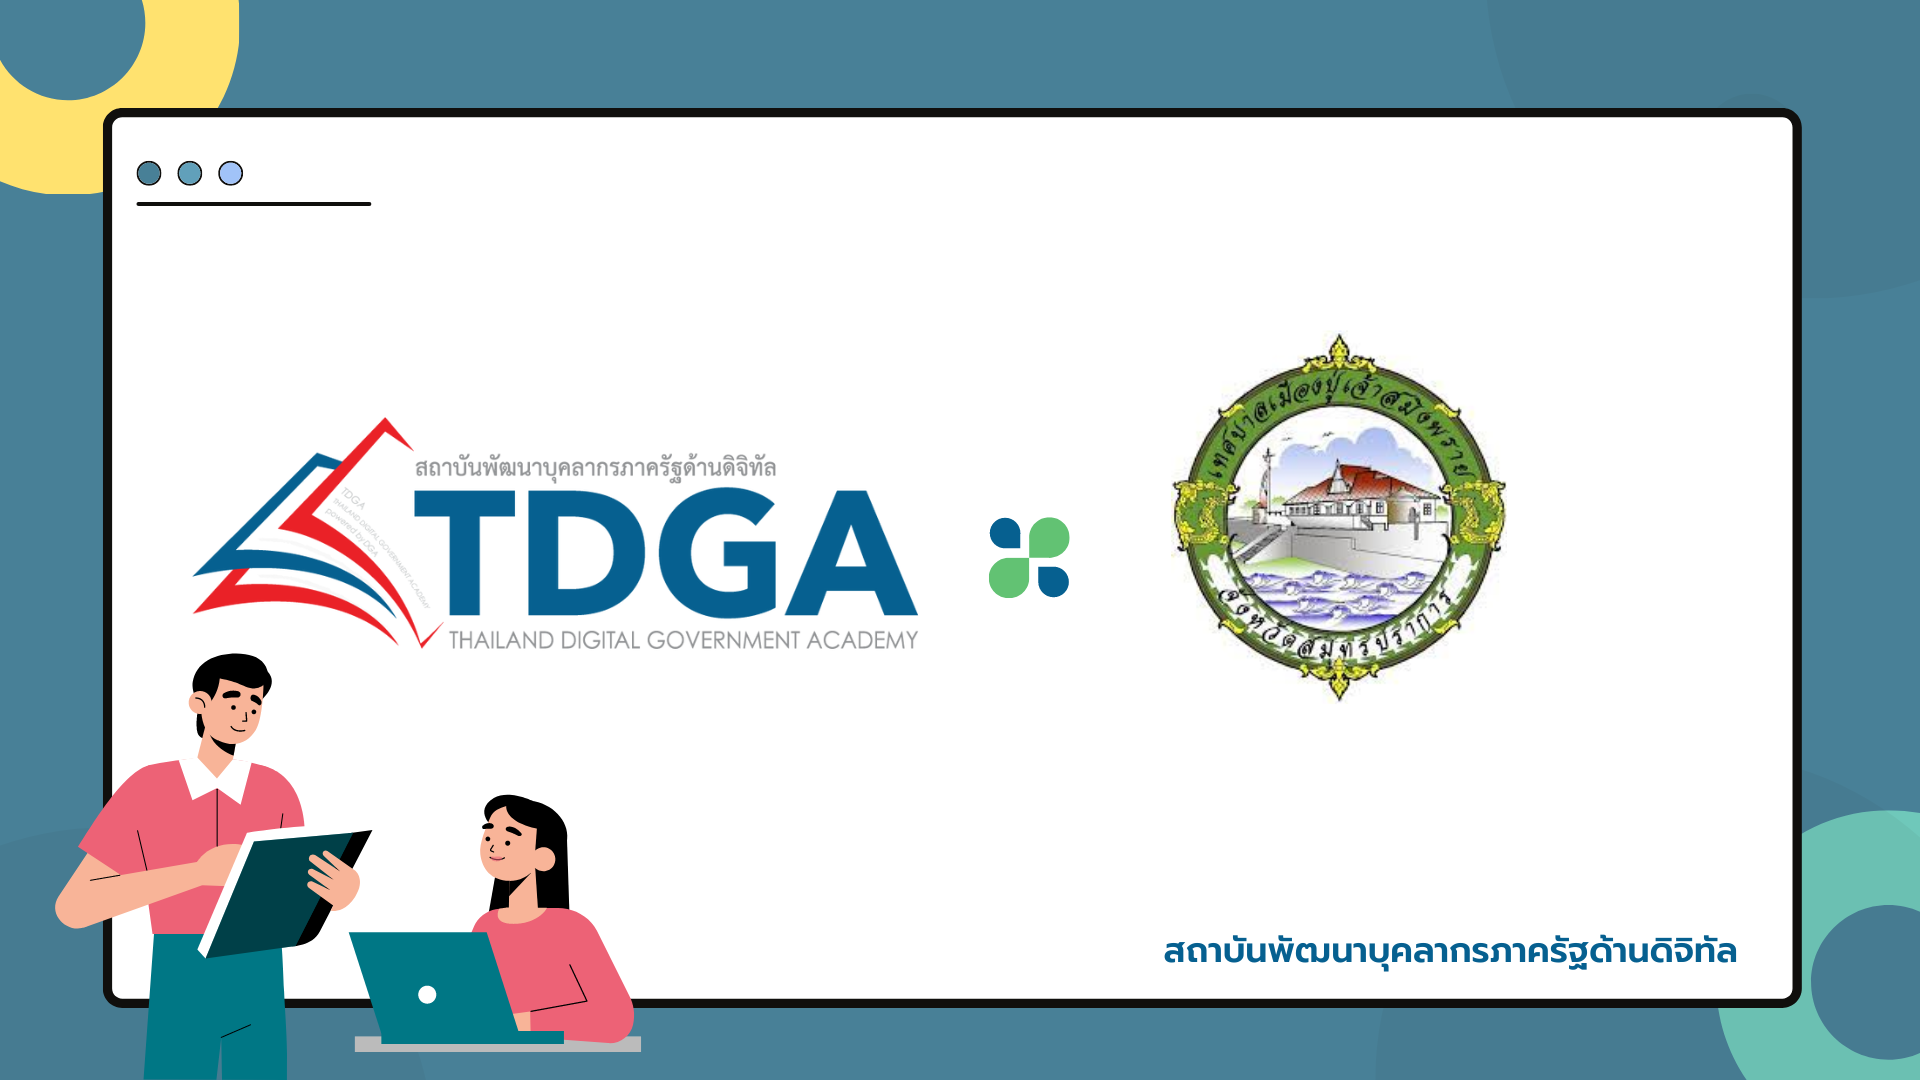 สถาบัน TDGA by DGA ร่วมเป็นวิทยากรบรรยายใน หลักสูตรฝึกอบรมและศึกษาดูงานการพัฒนา ทักษะด้านดิจิทัลเพื่อการทำงานภาครัฐ ให้แก่ สำนักงานเทศบาลเมืองปู่เจ้าสมิงพราย